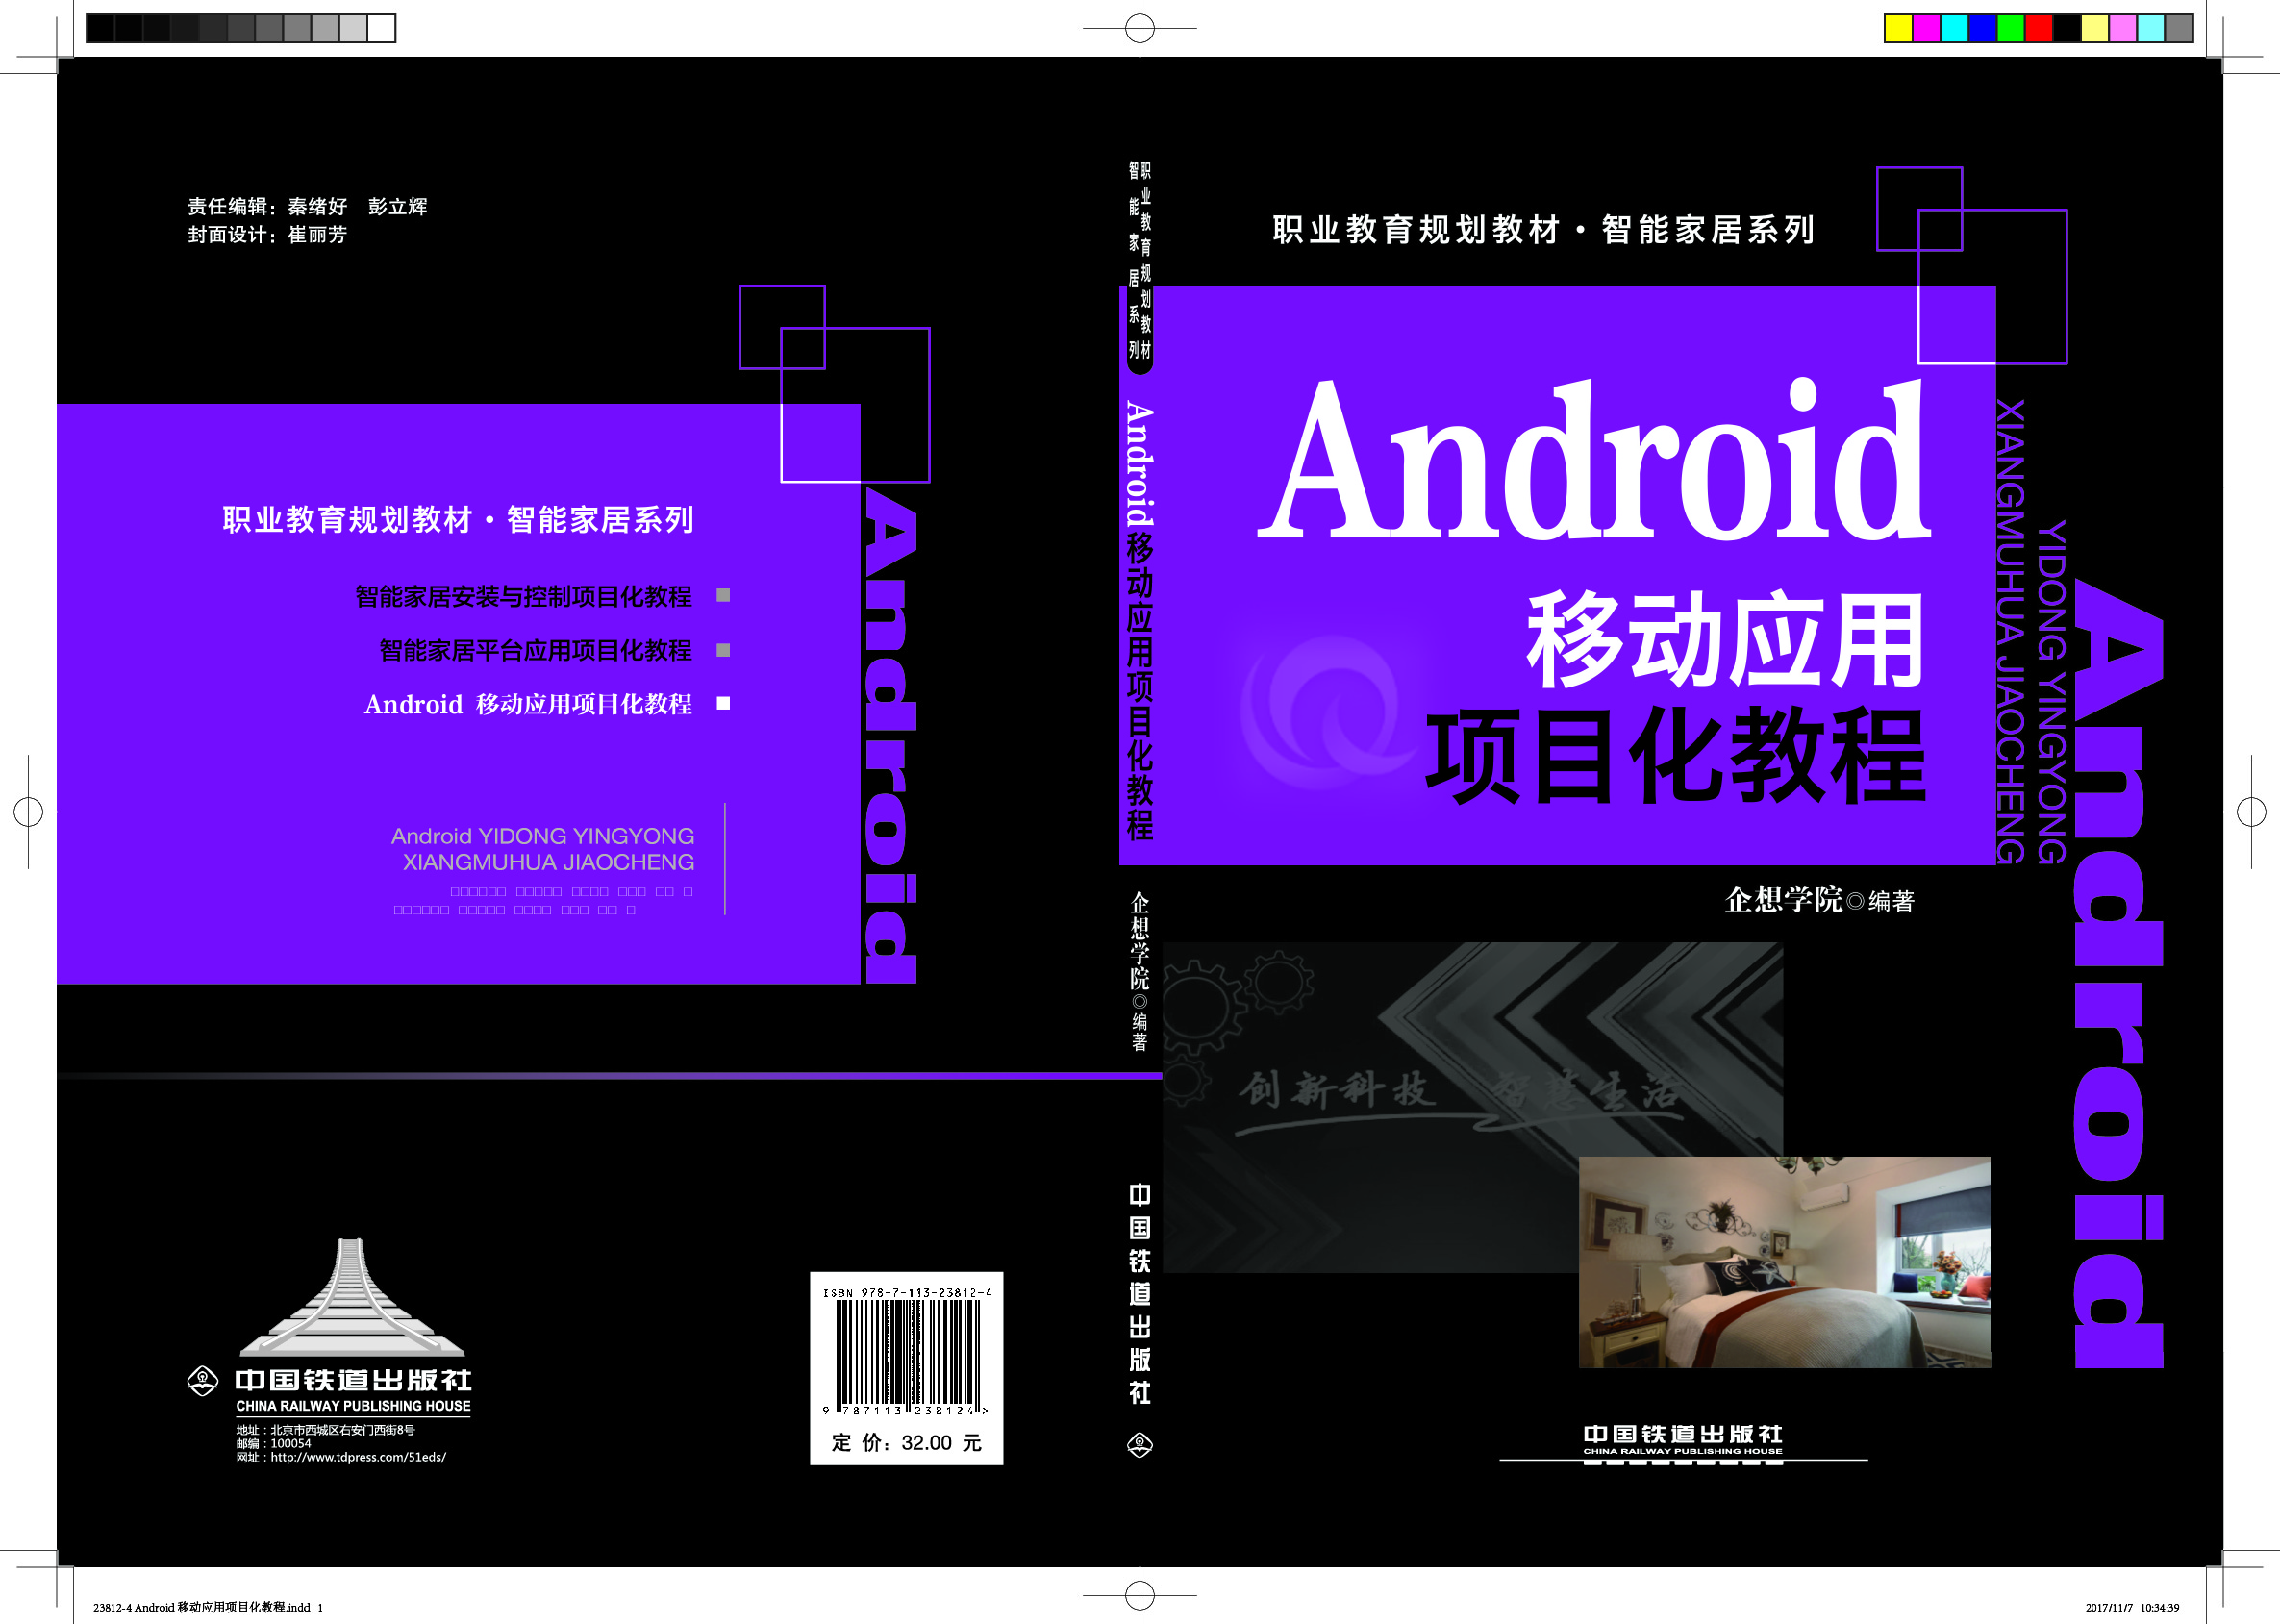 23812-4 Android 移动应用项目化教程(1).jpg